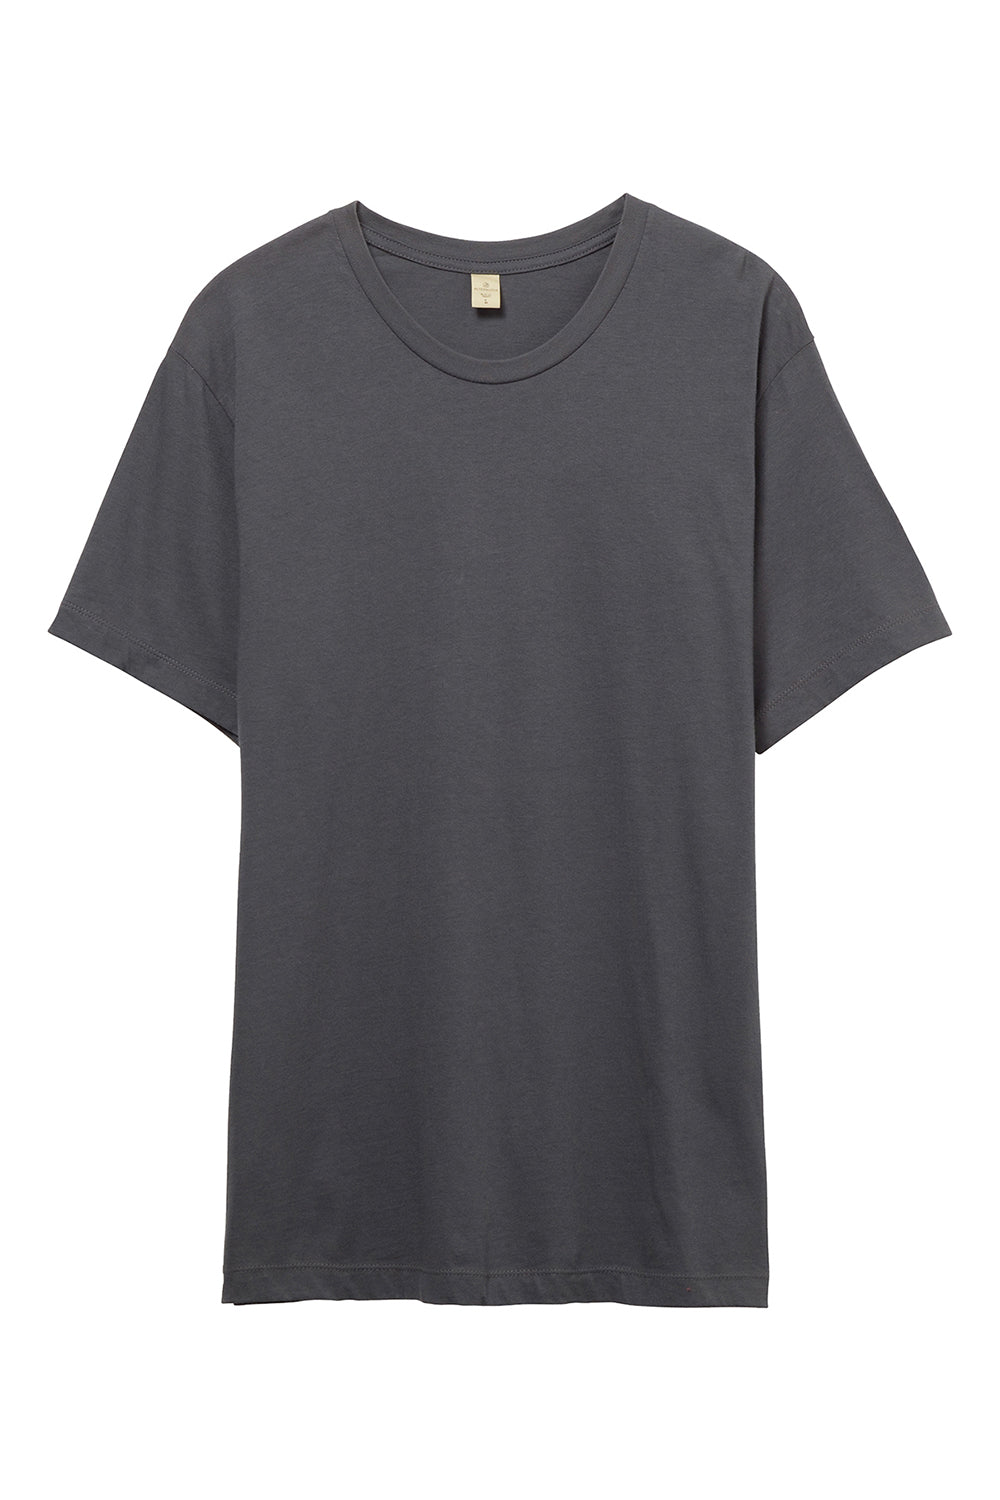 Alternative AA1070/1070 Mens Go To Jersey Short Sleeve Crewneck T-Shirt Asphalt Grey Flat Front